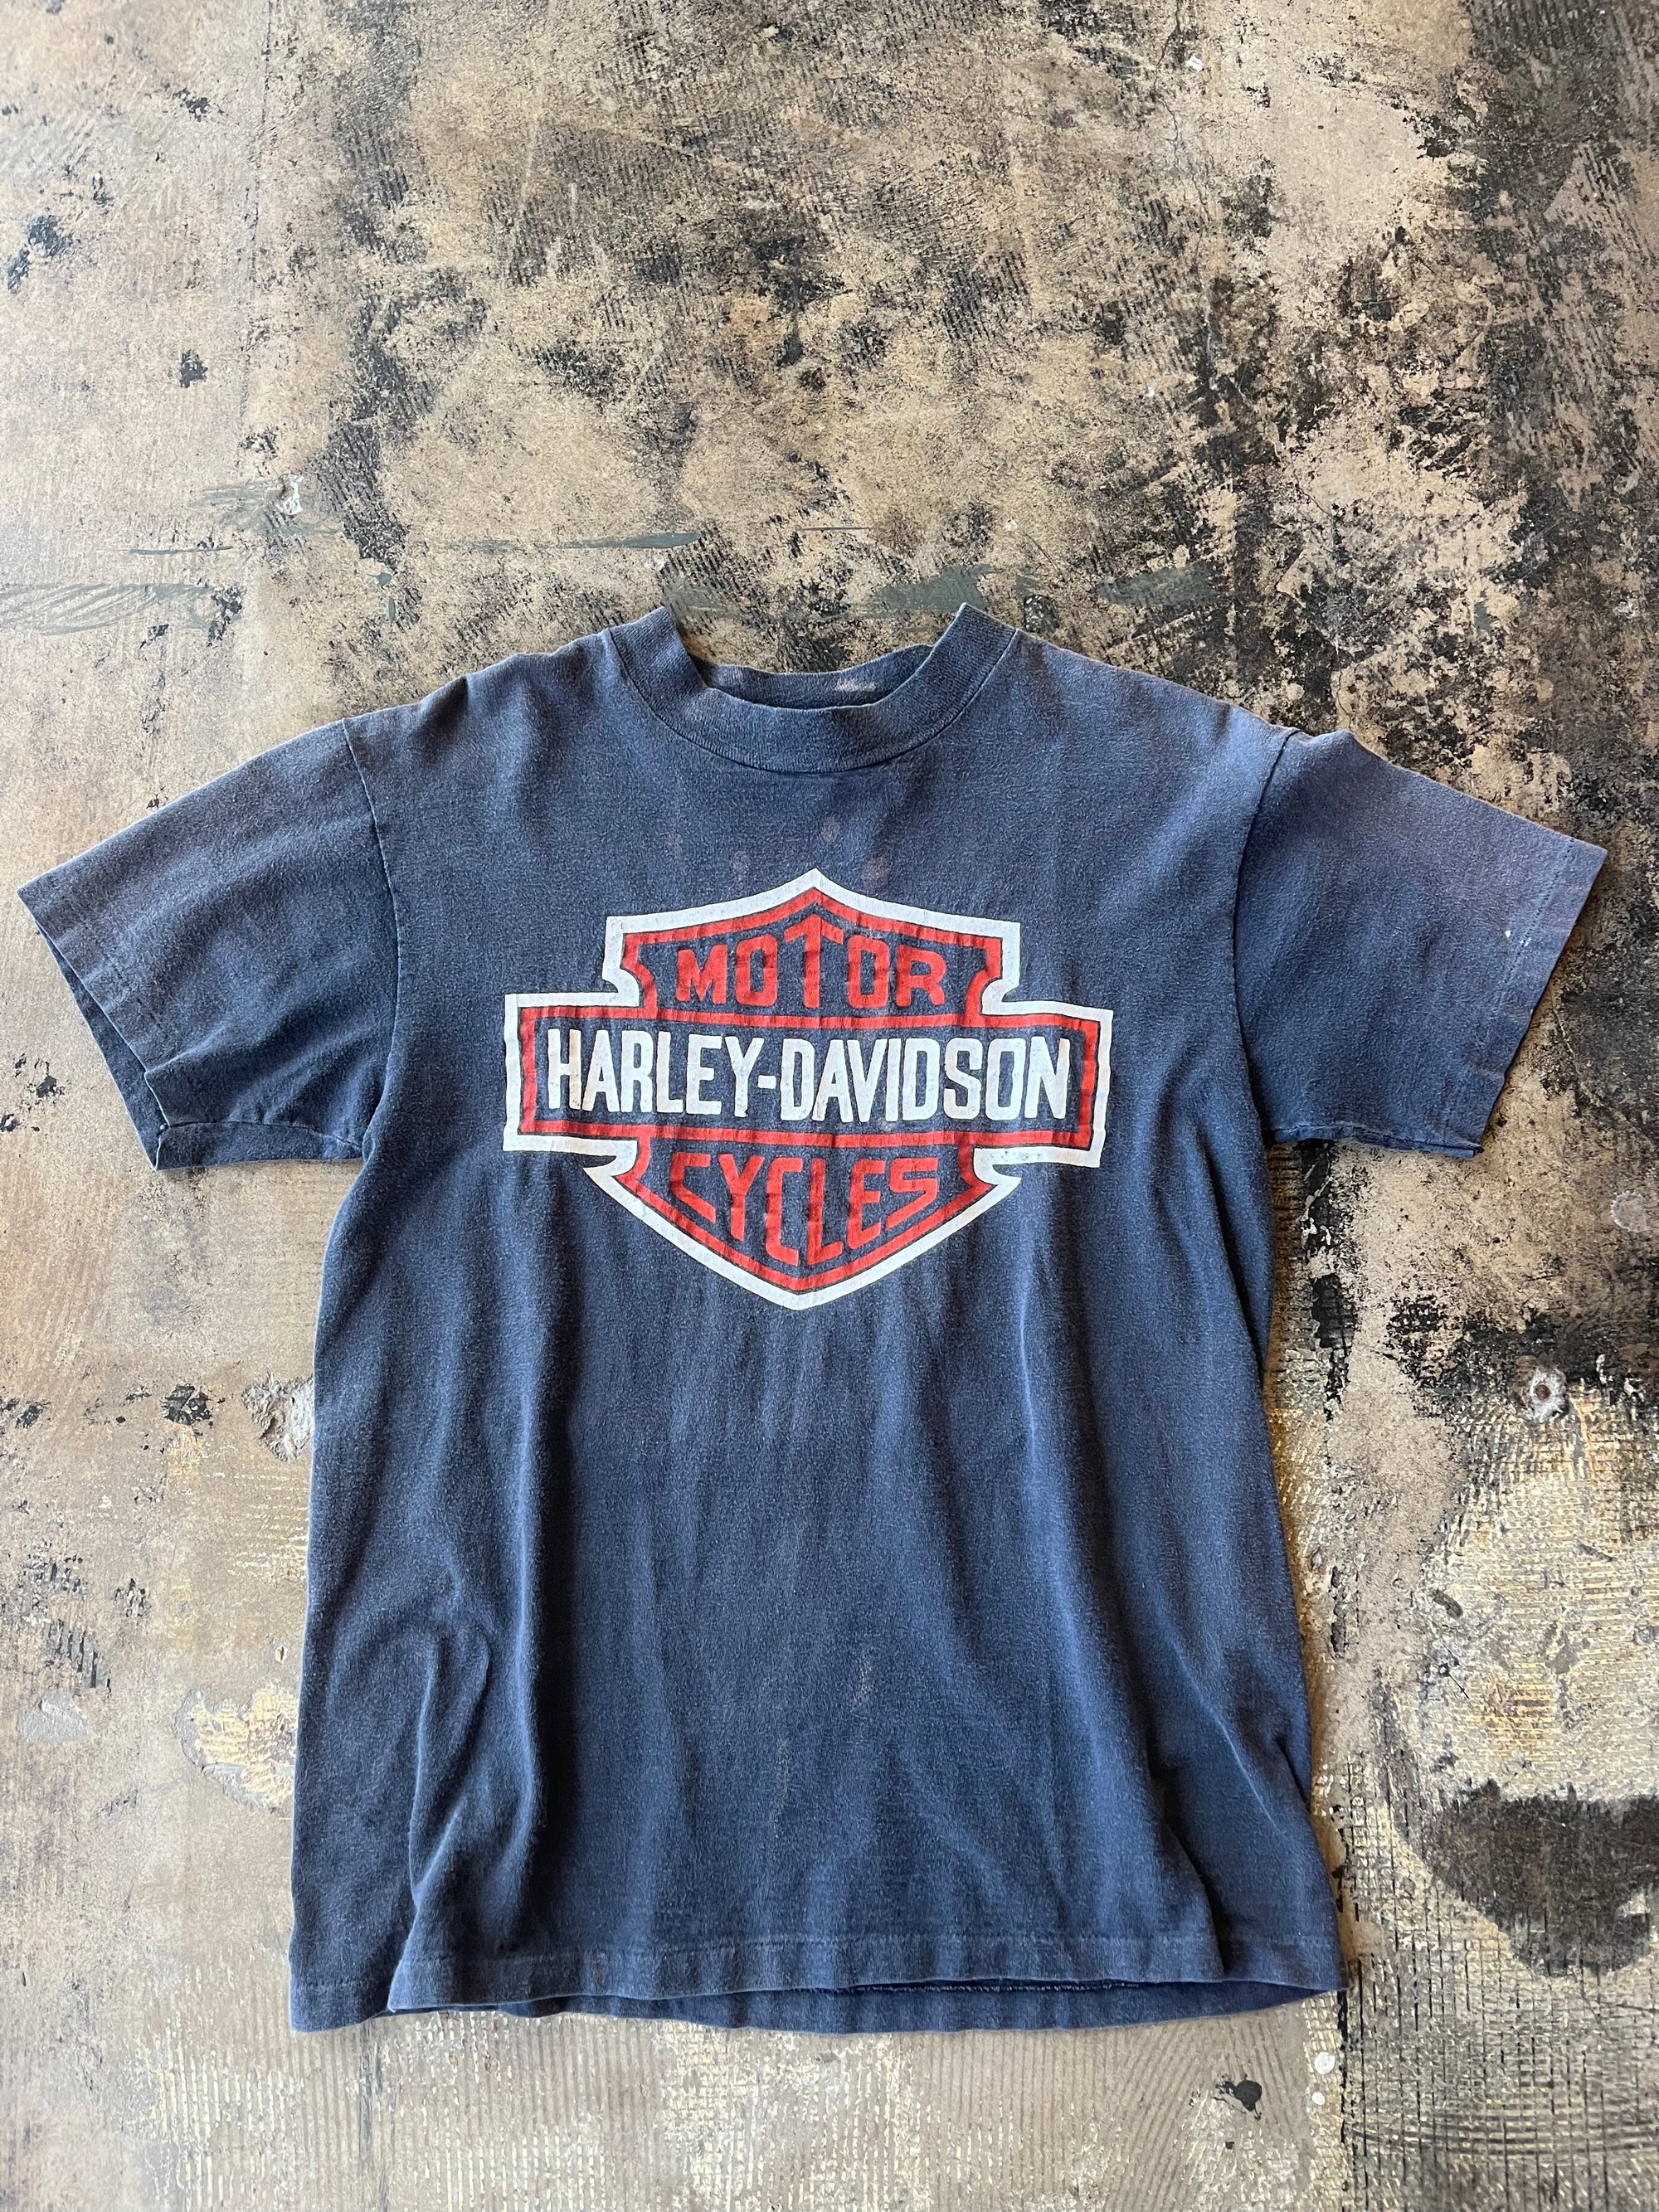 Rossville Harley Davidson Tee